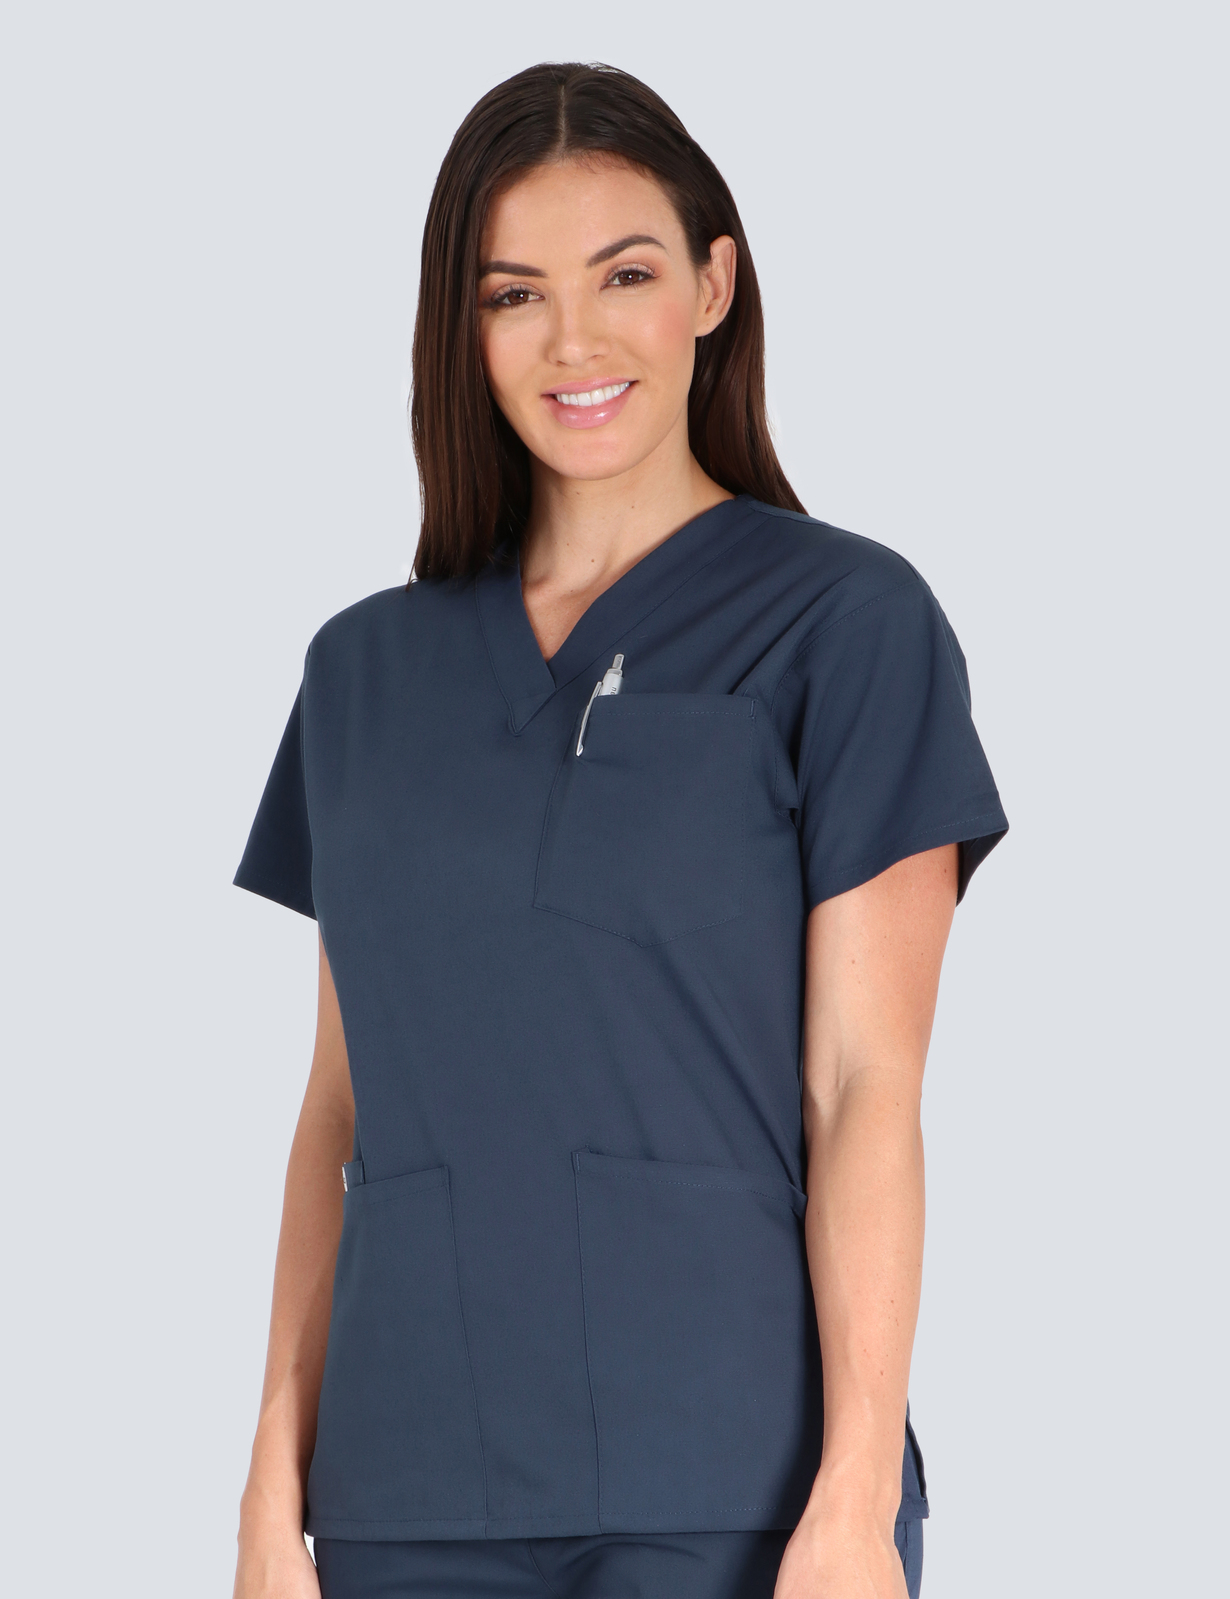 St Vincent's Hospital Emergency Department Nurse Practitioner Uniform Top Only Bundle (4 Pocket Top in Navy incl Logo)